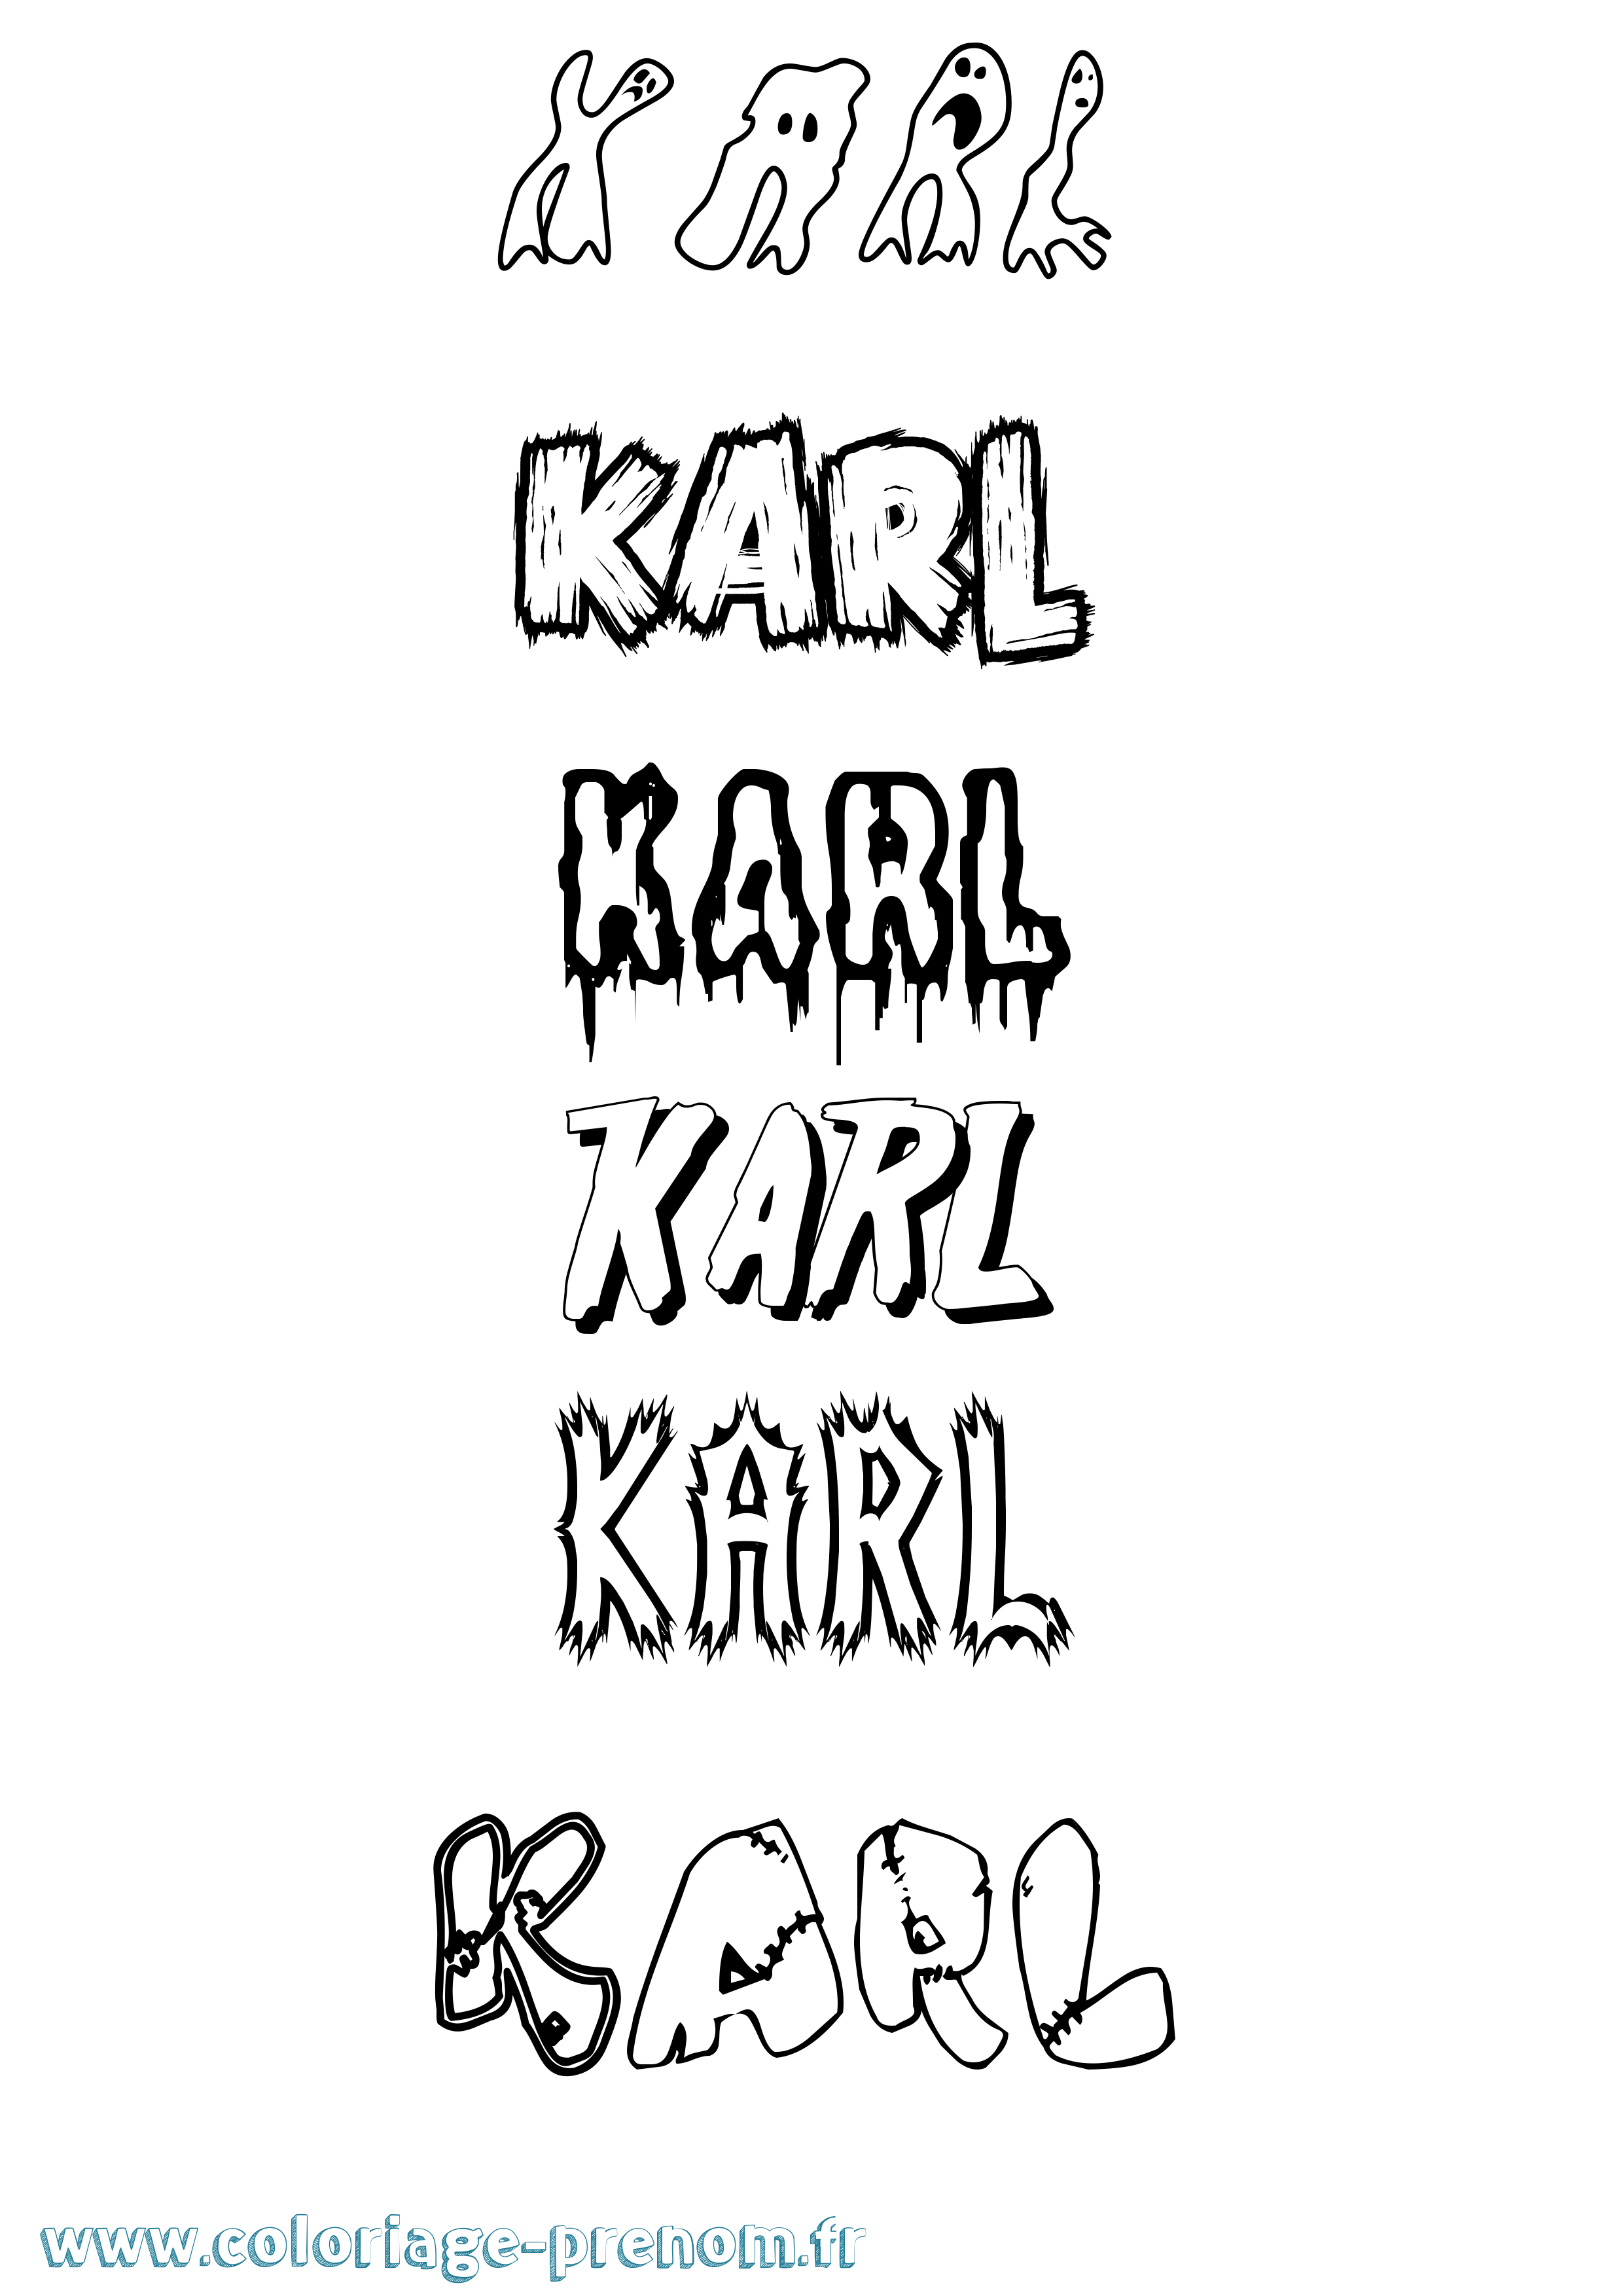 Coloriage prénom Karl